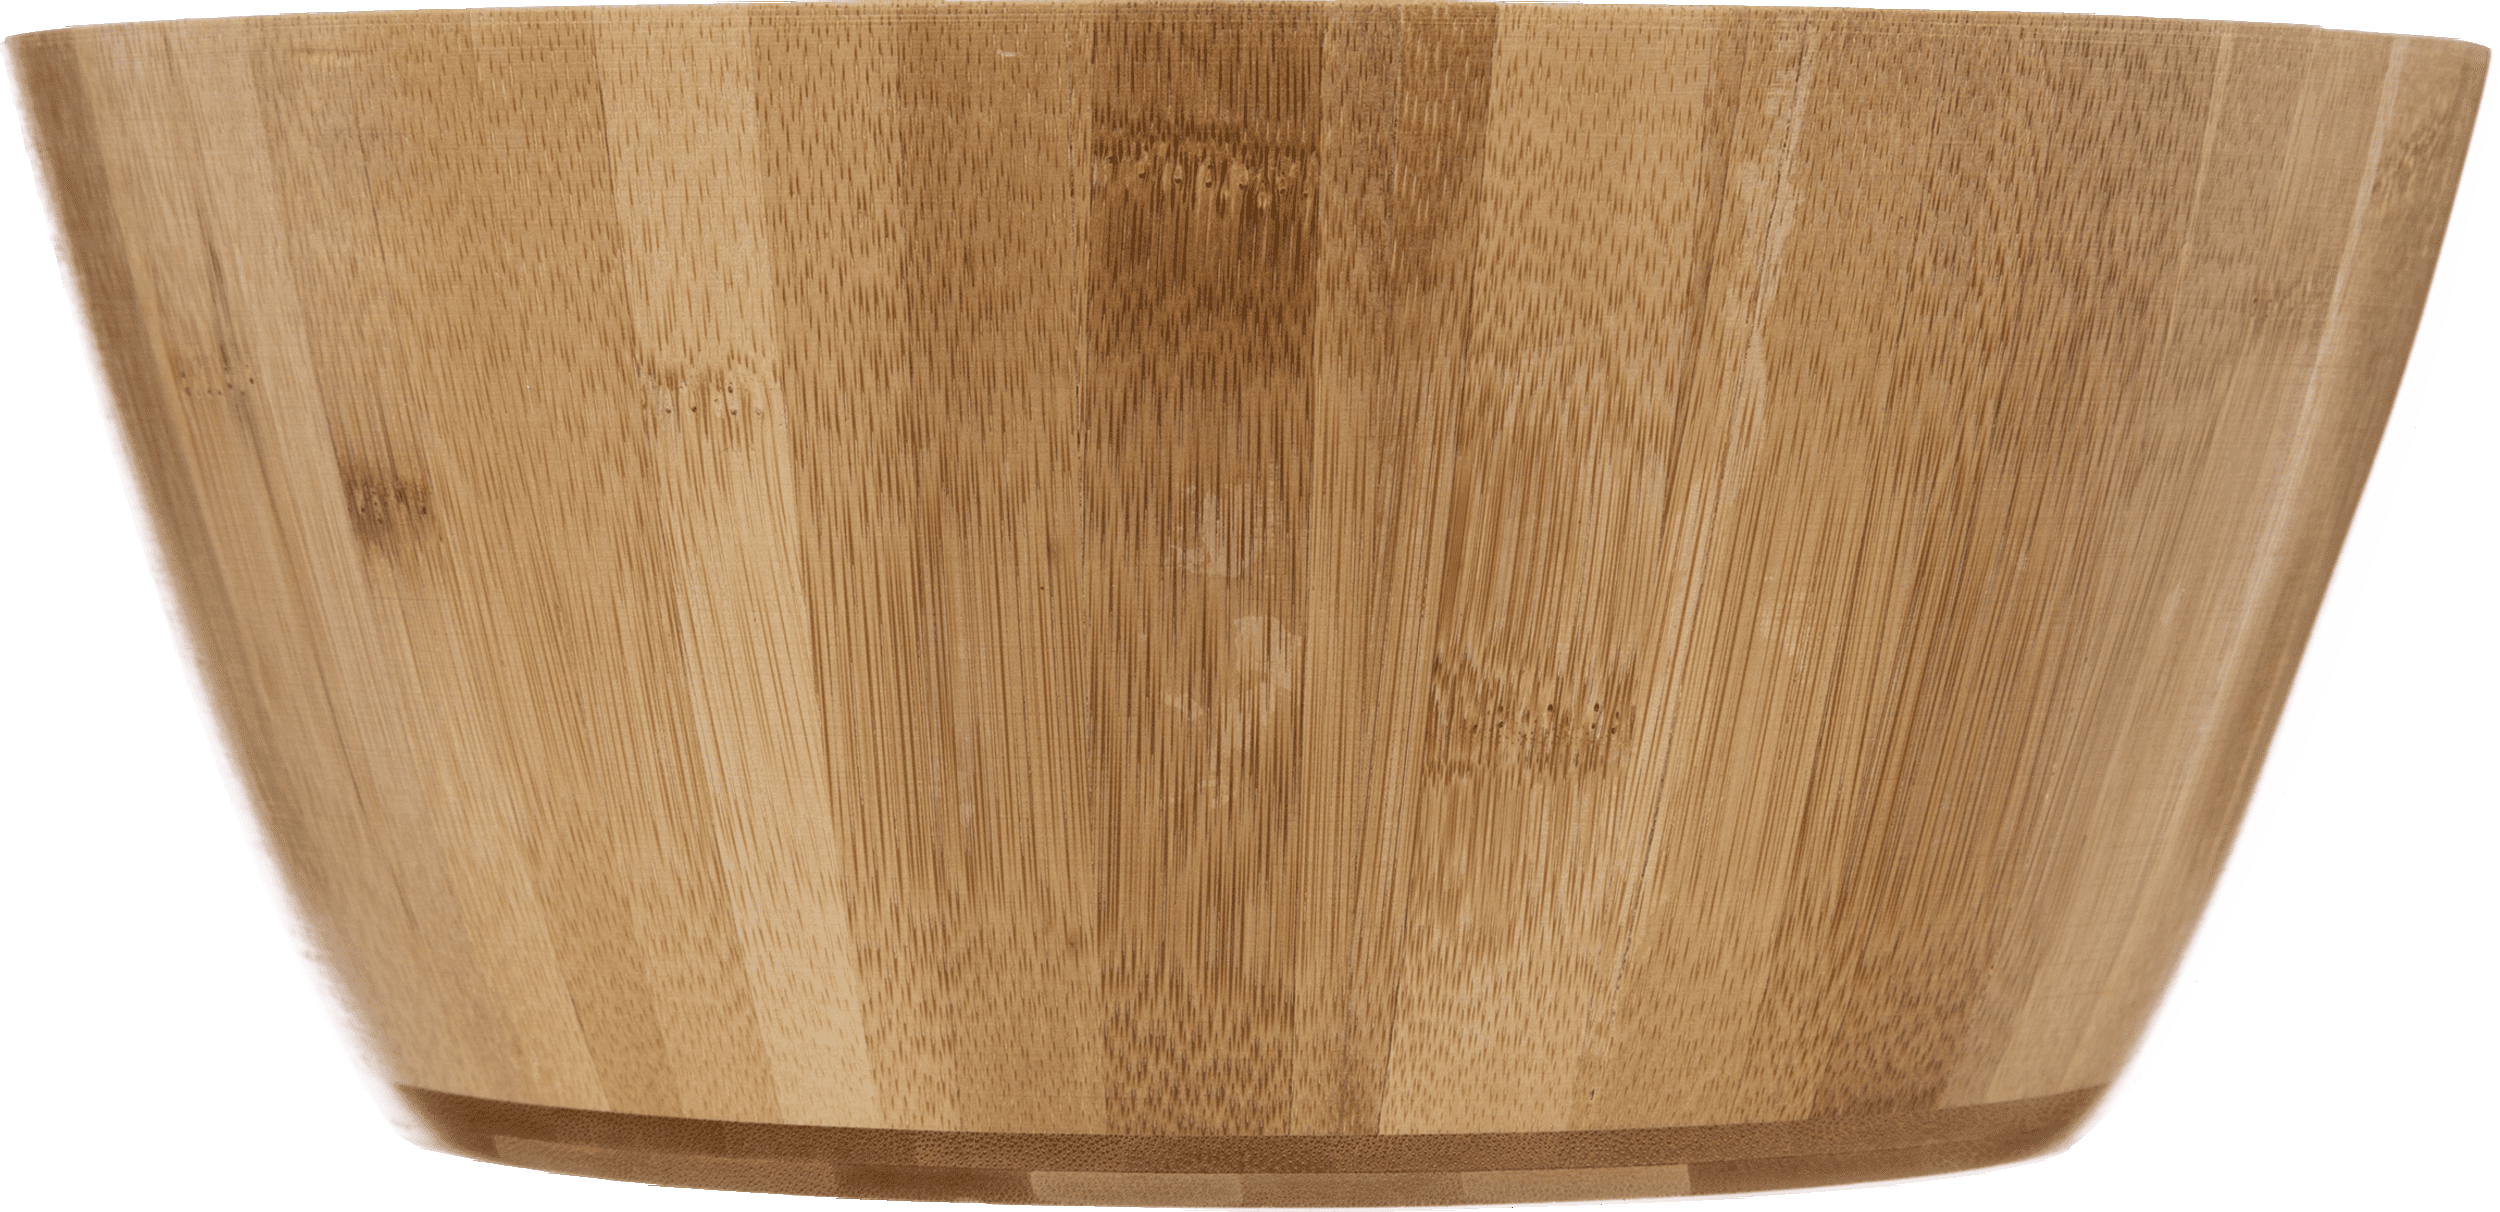 4goodz Ronde Fruitschaal/Slakom van Bamboe 28x28x13 cm - Bruin